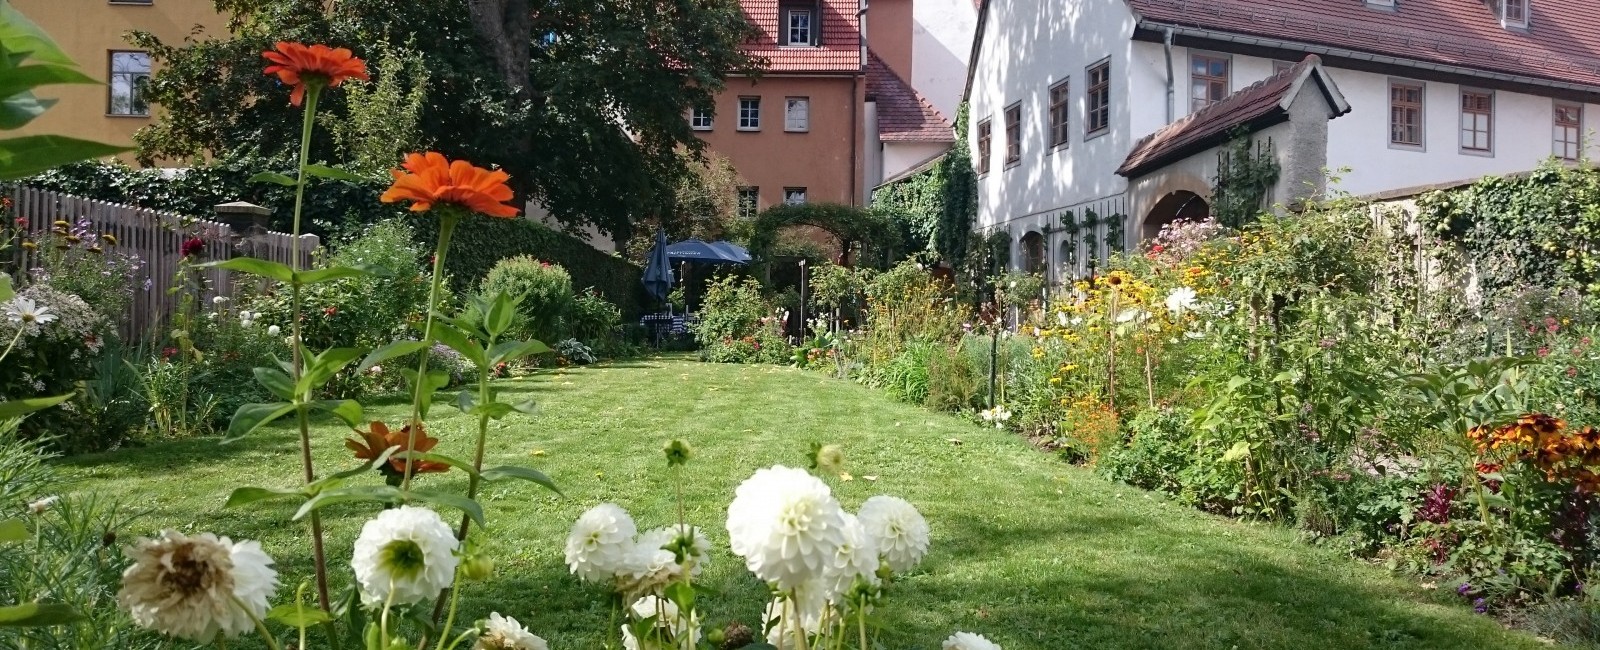 Biedermeiergarten am Kirms-Krackow-Haus